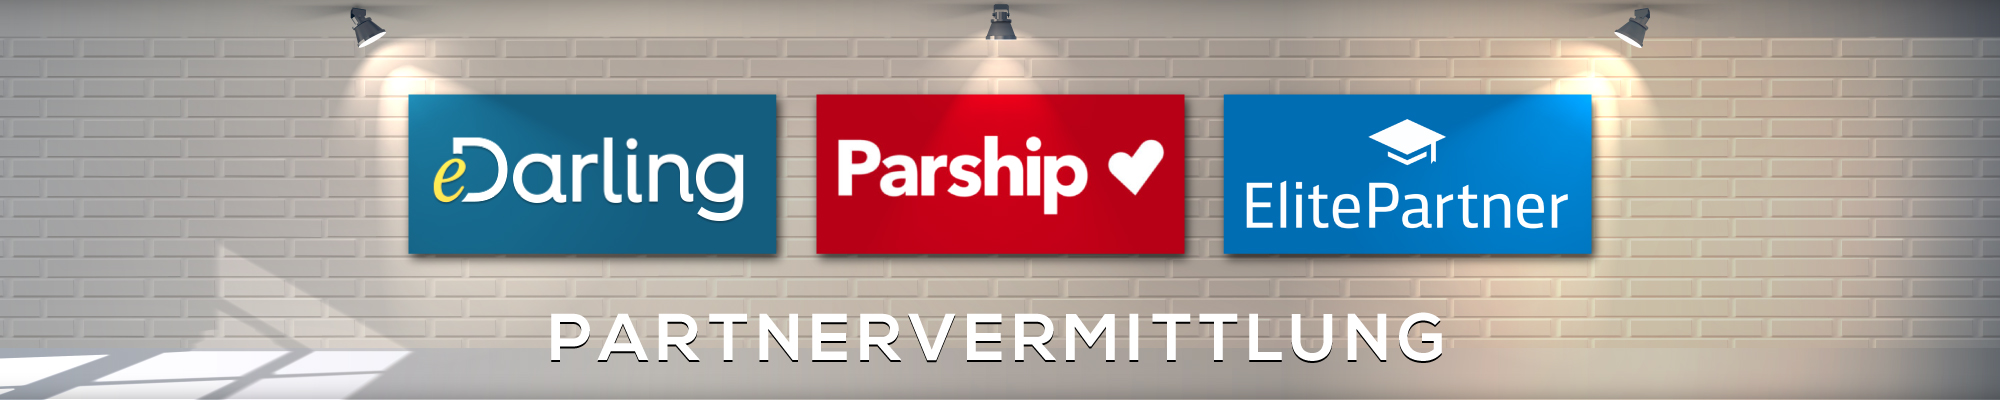 Partnervermittlung und Partnersuche Logo von eDarling, Parship und ElitePartner